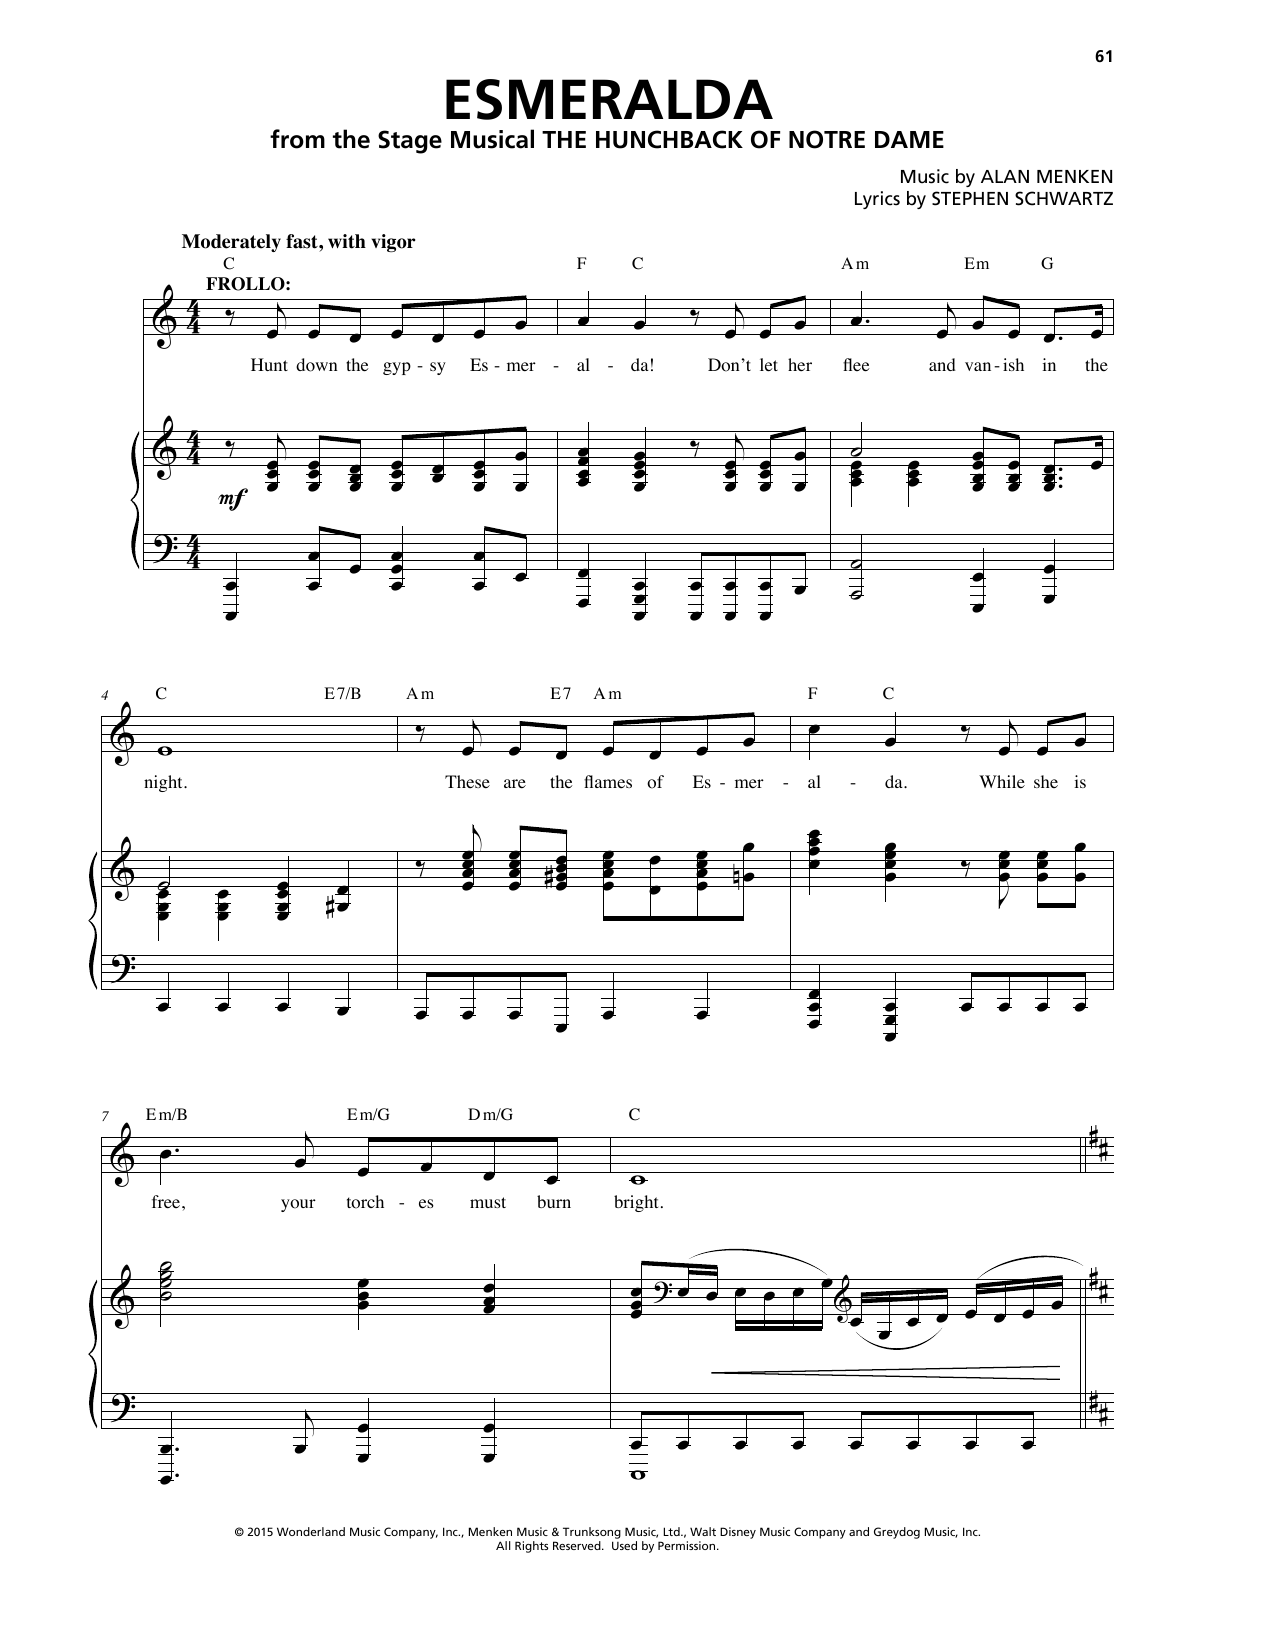 Alan Menken Esmeralda Sheet Music Notes & Chords for Piano & Vocal - Download or Print PDF